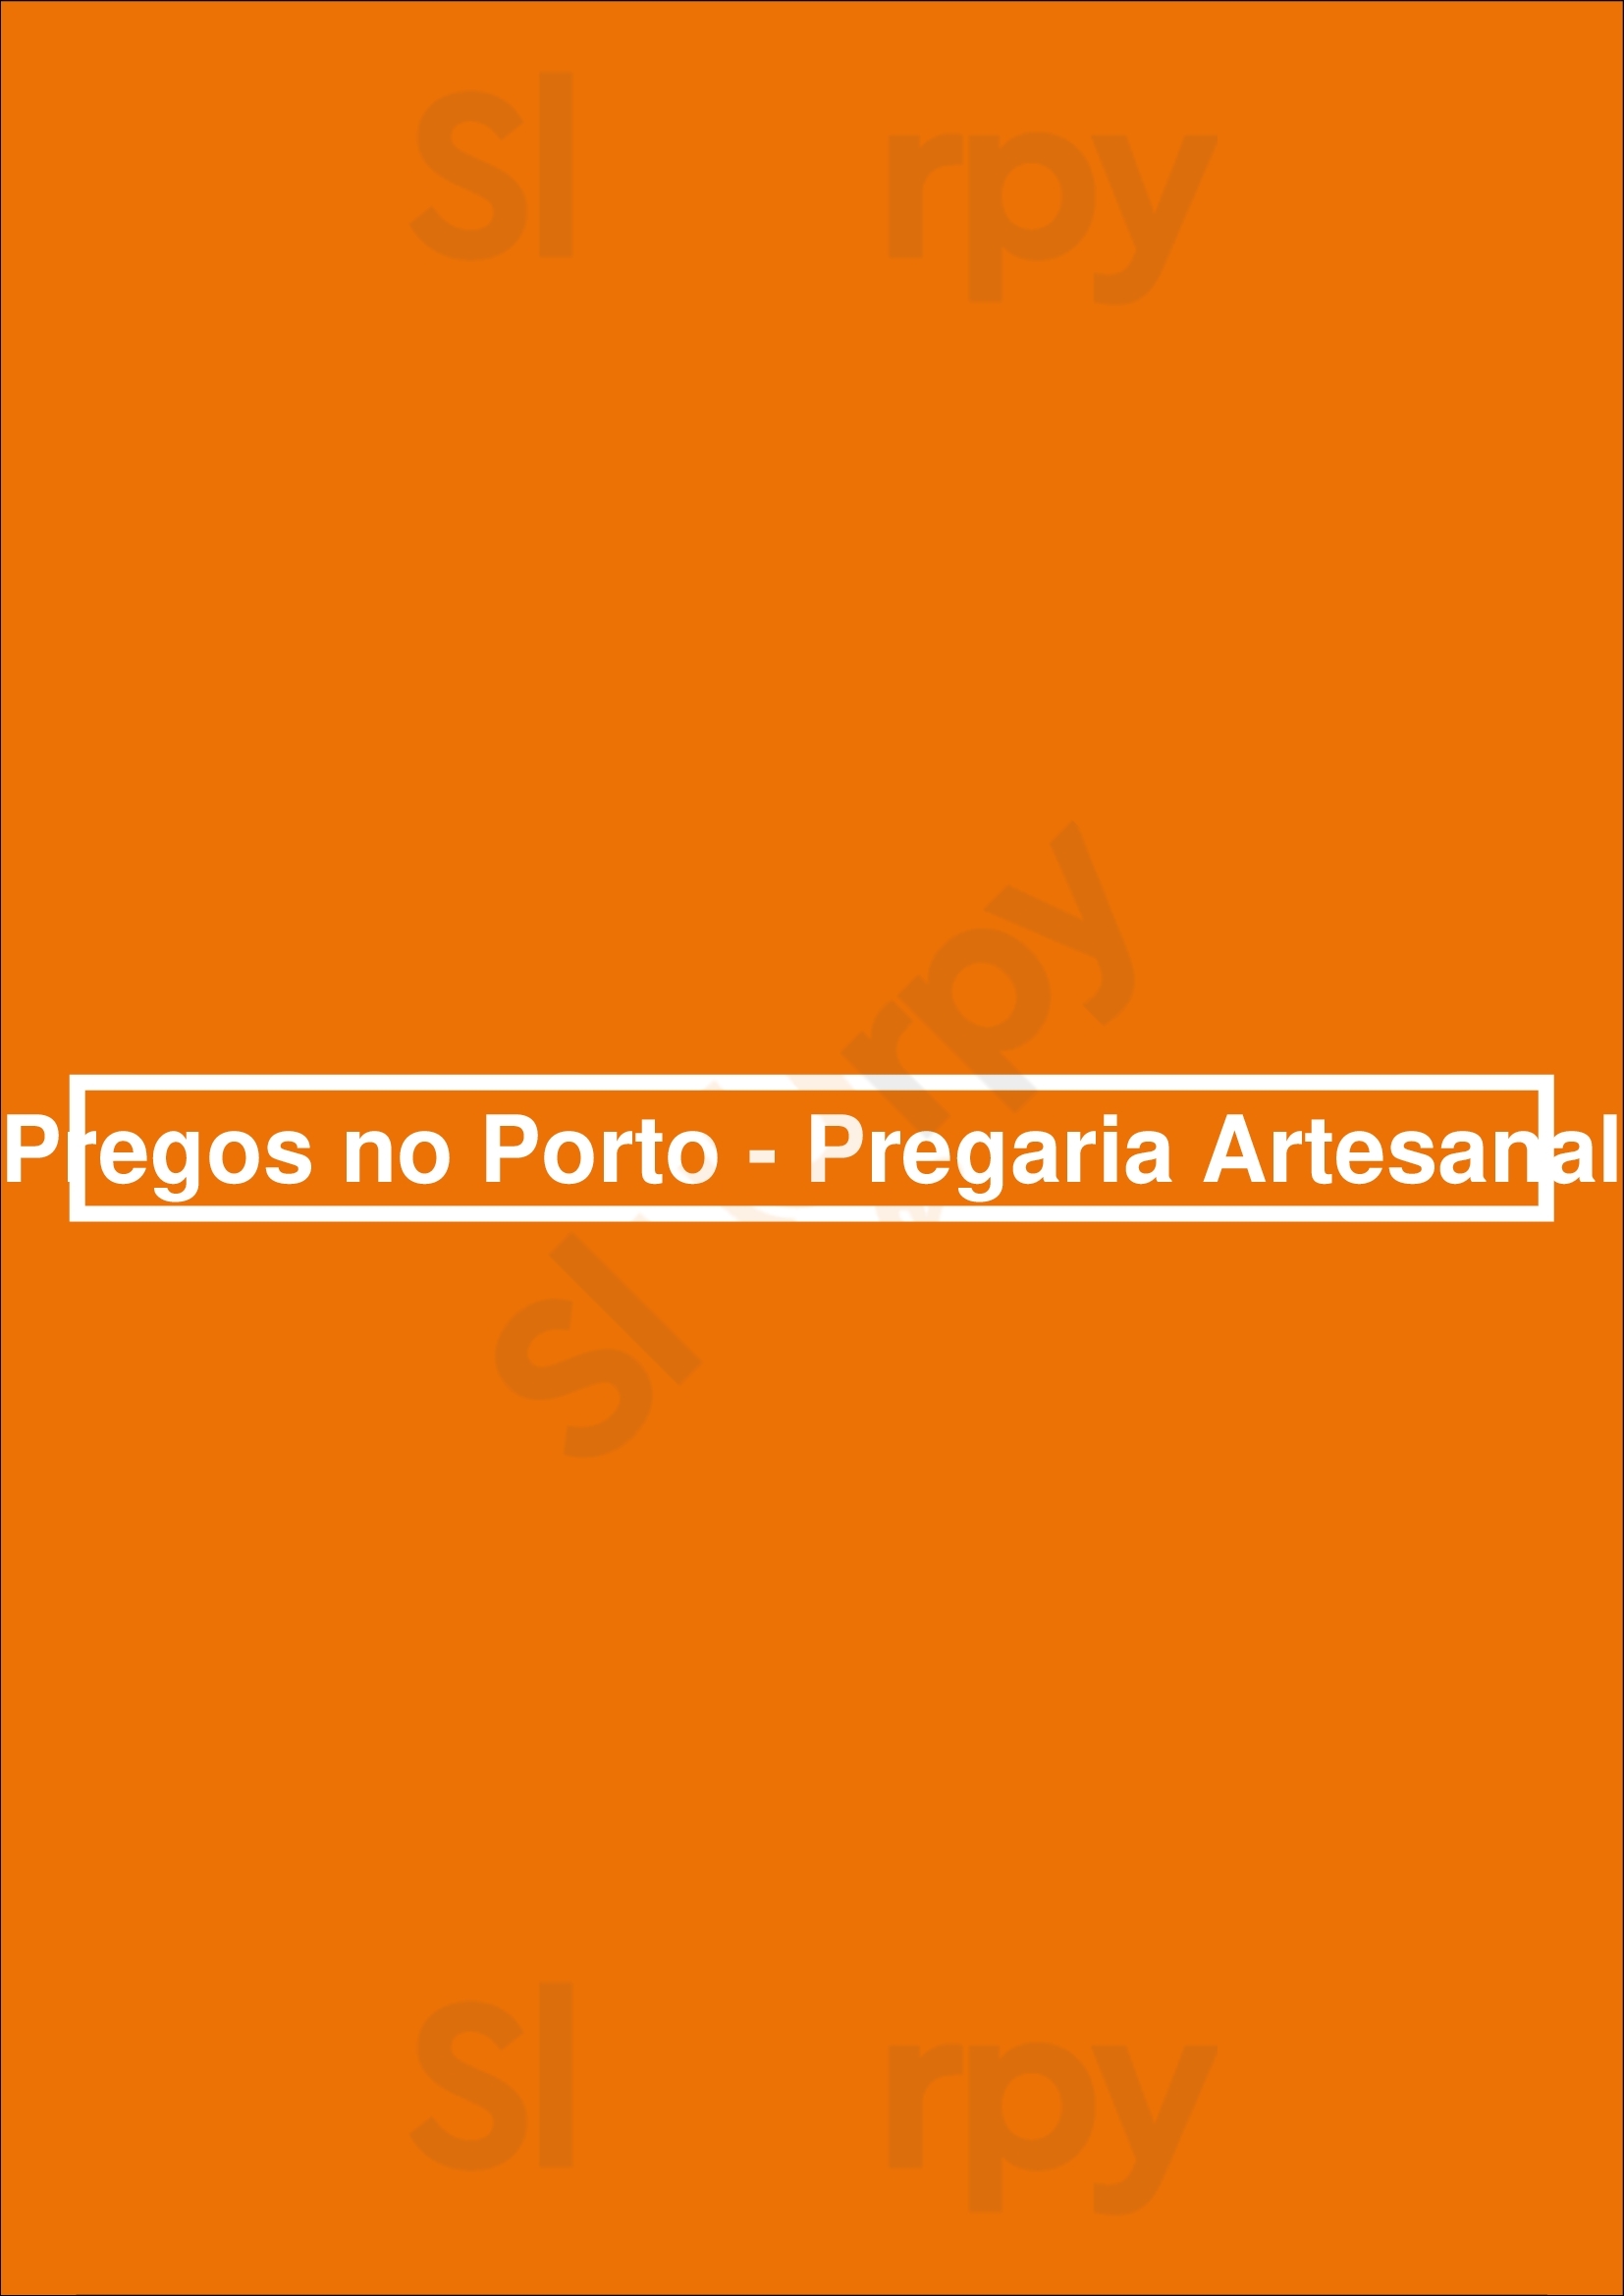 Pregos No Porto - Pregaria Artesanal Porto Menu - 1